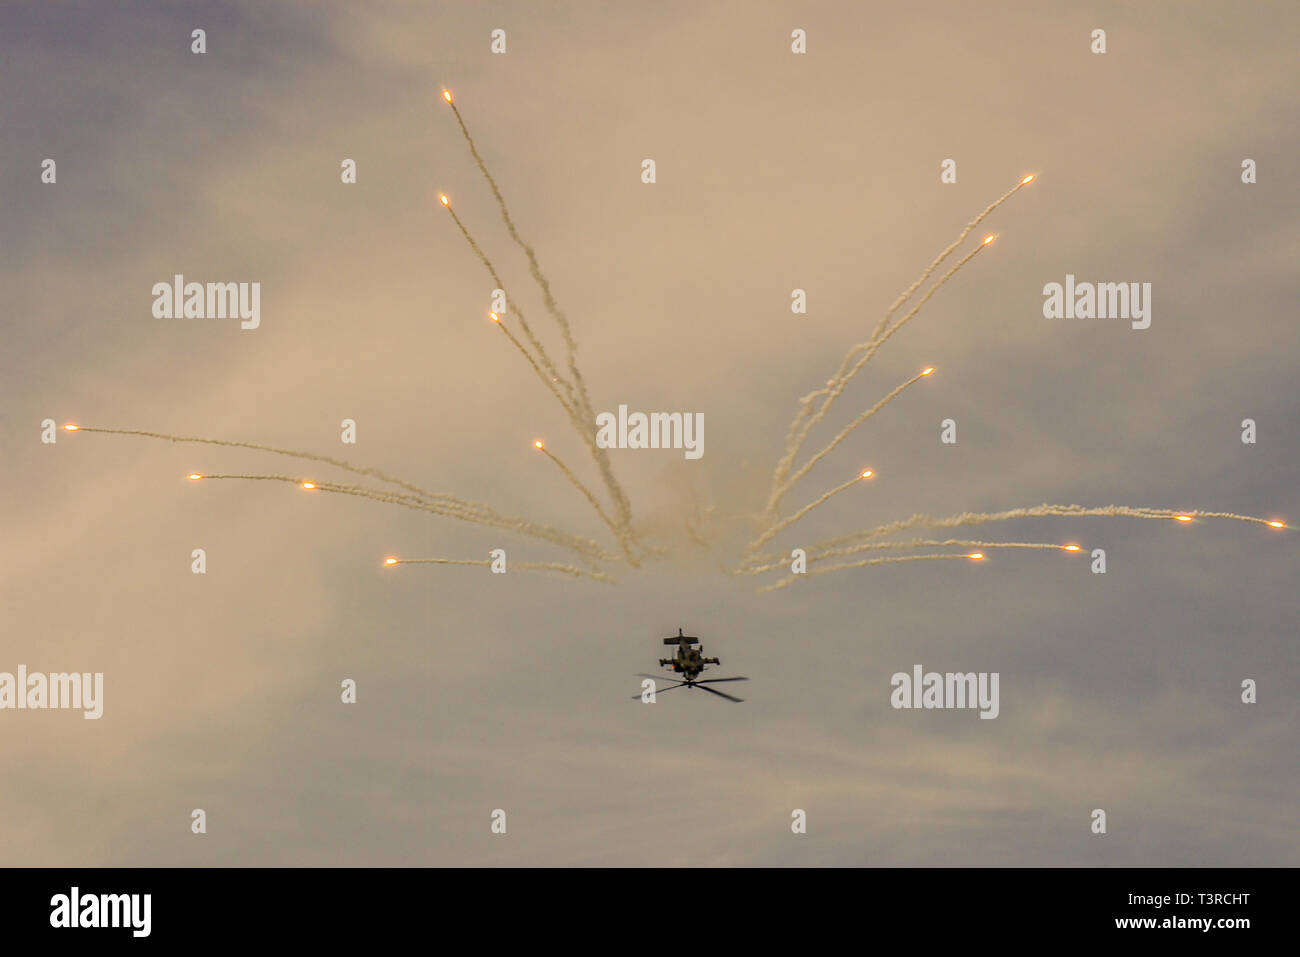 Royal Netherlands Air Force Boeing AH-64 Apache Kampfhubschrauber feuern aus defensiven Flares zur Wärme Raketen weg suchen zu gewinnen. Lockvögel Stockfoto